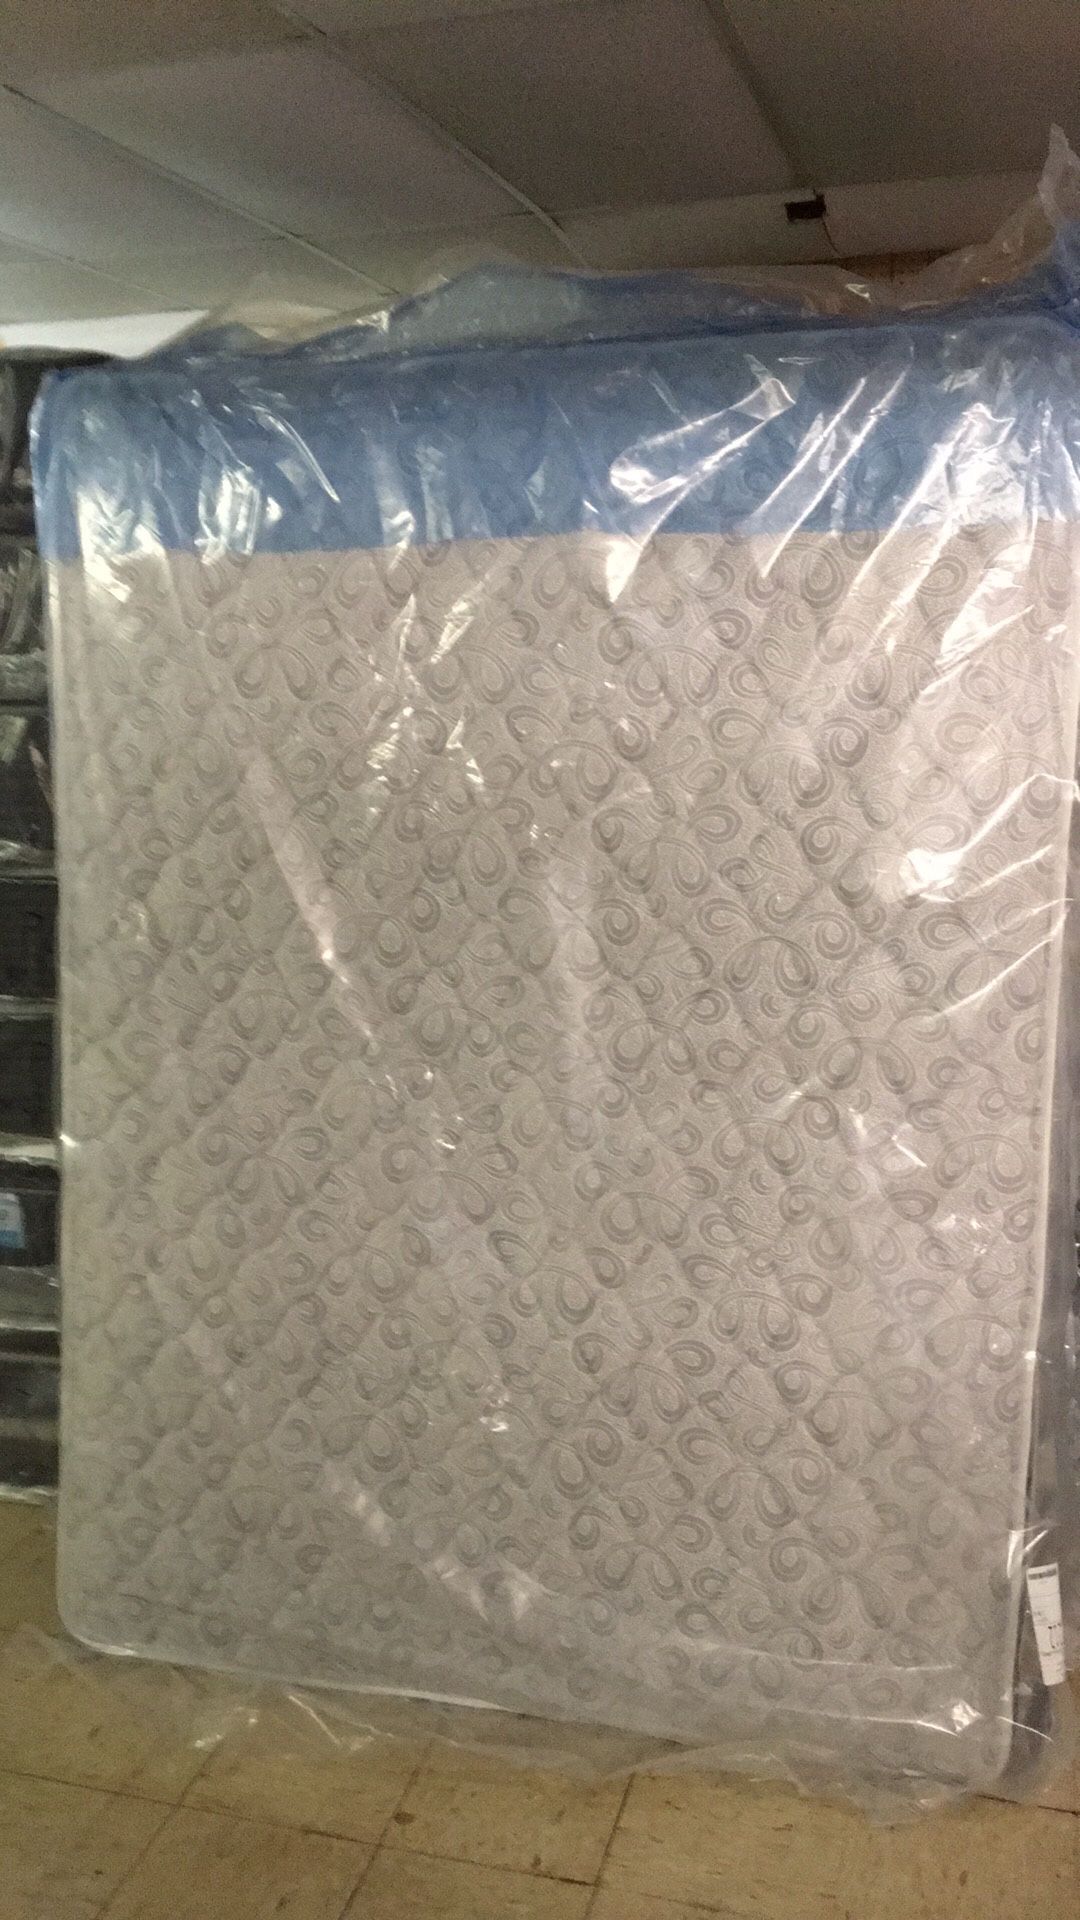 Brand New plush queen size mattress